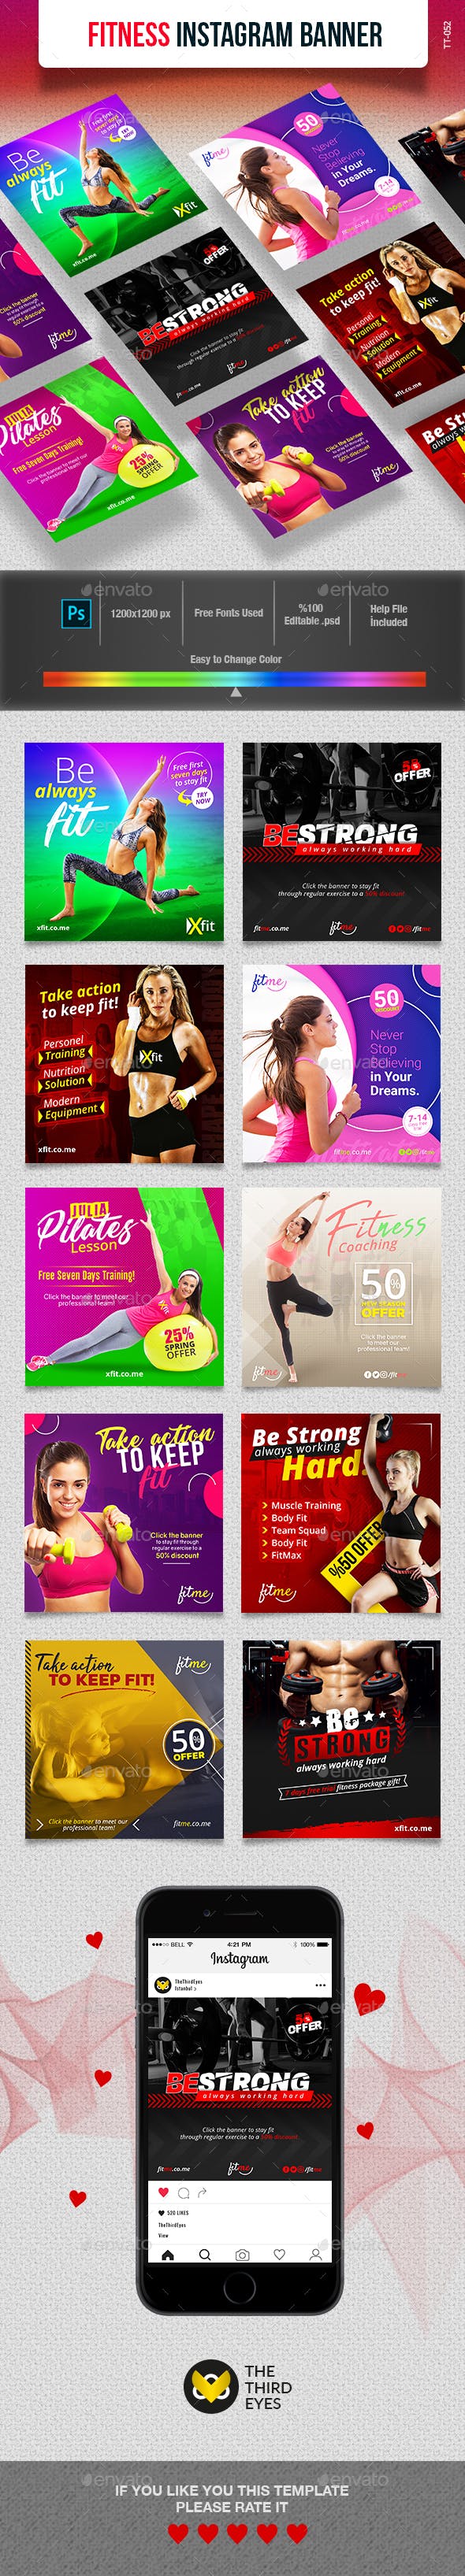 健身主题Instagram社交媒体Banner广告营销海报模板素材库精选插图